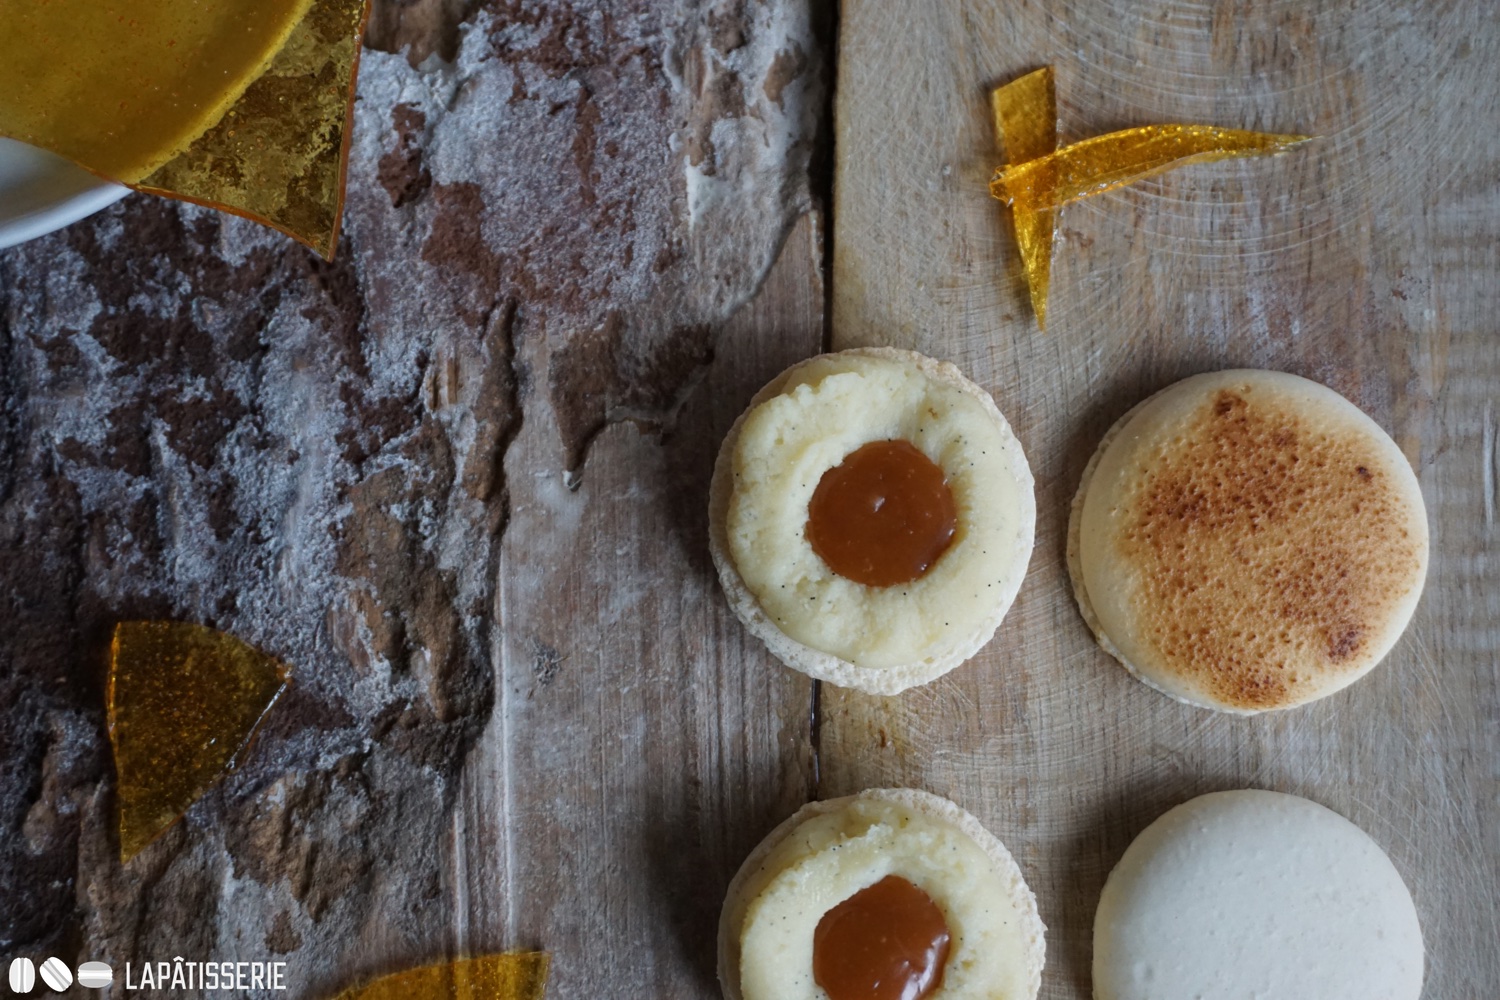 Im Inneren der Macarons lockt weicher Karamell, der perfekt mit dem Vanilleganache harmoniert.